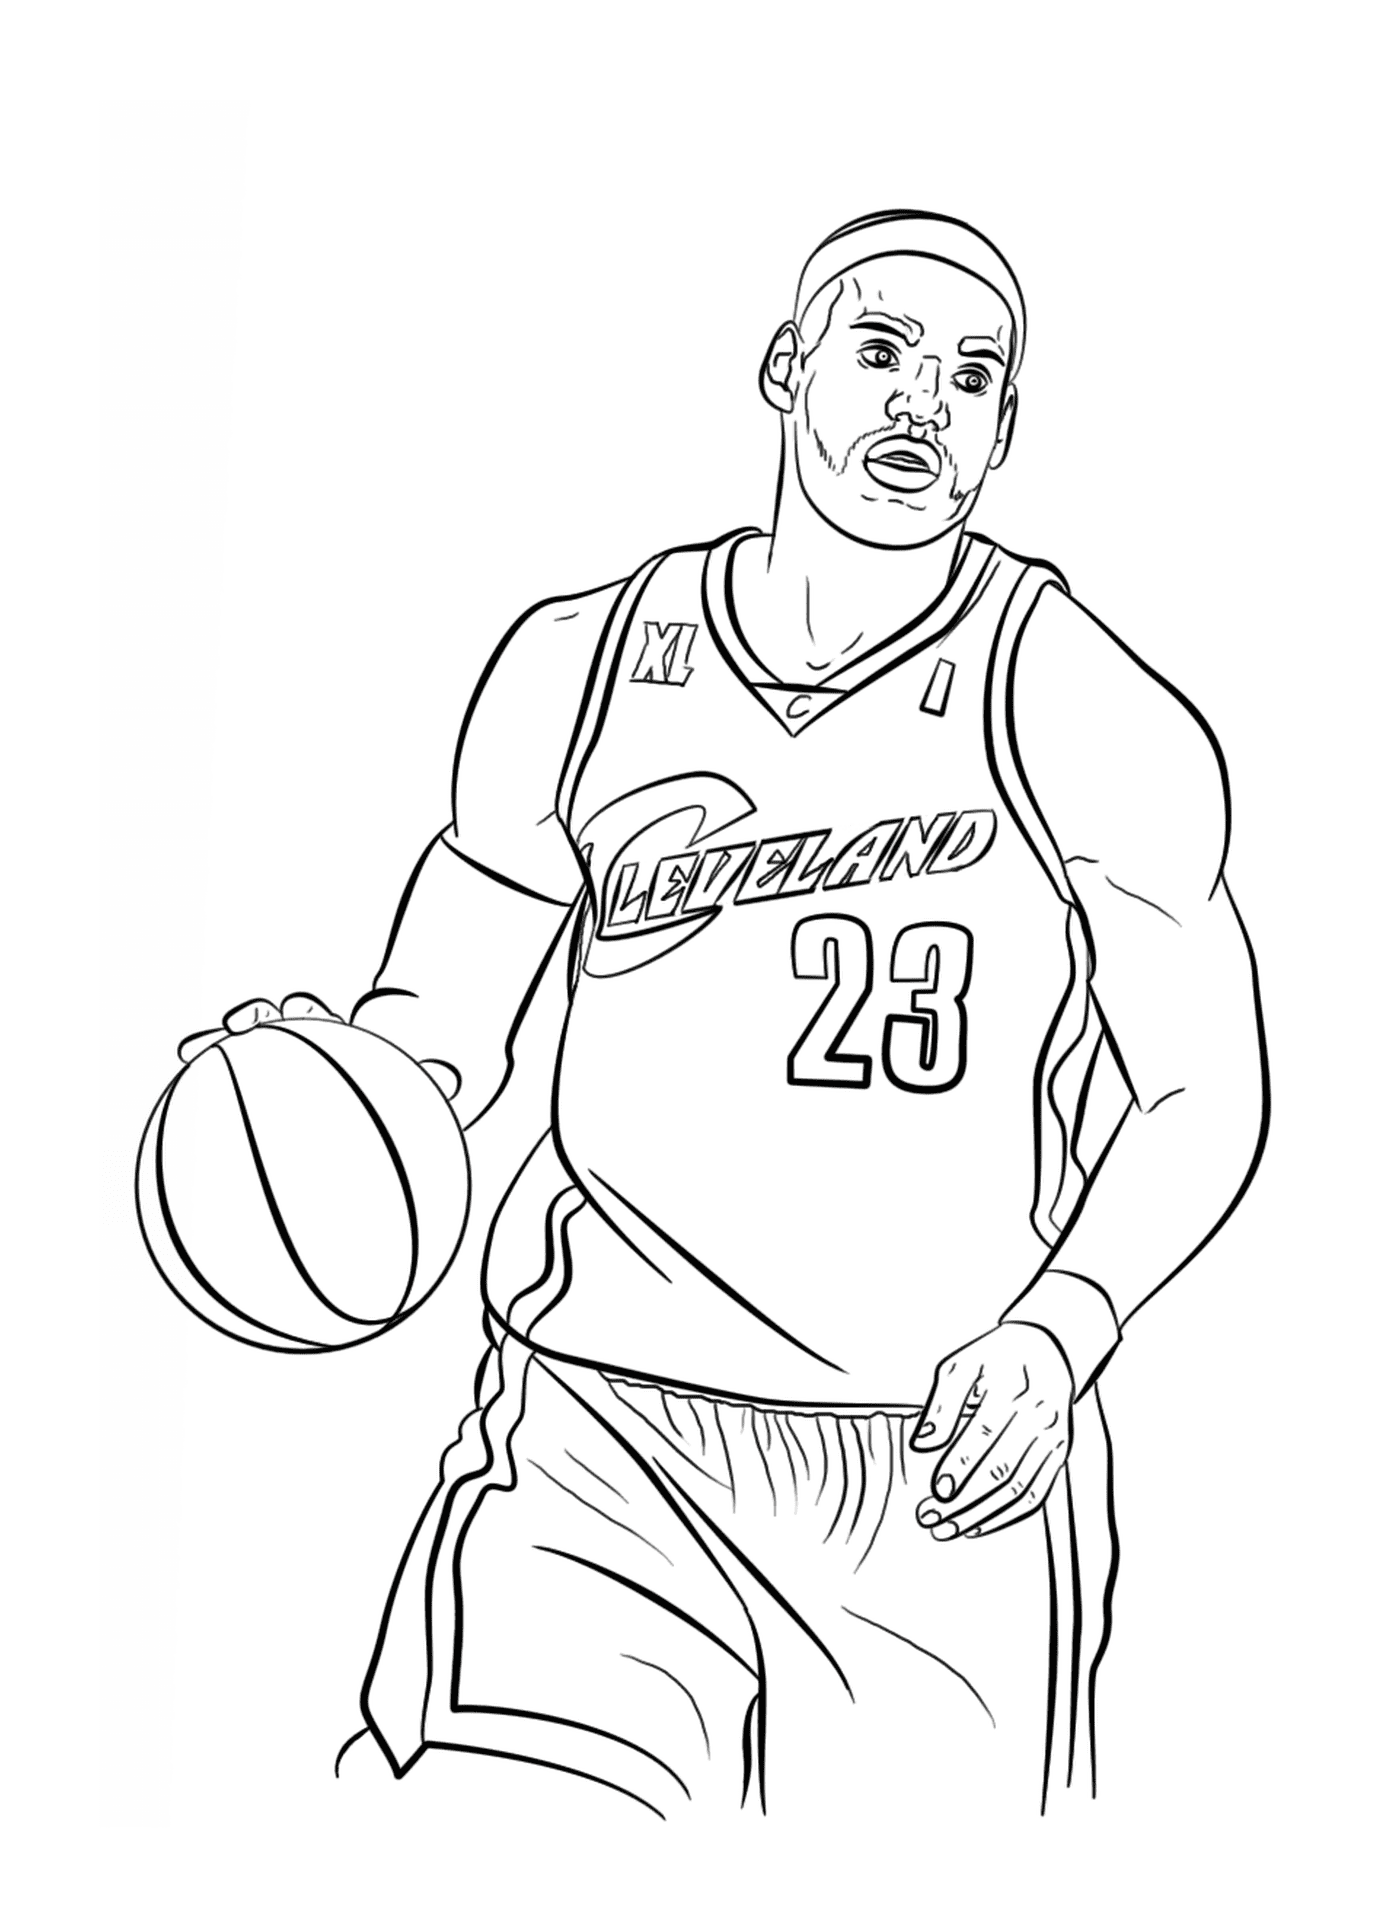  Леброн Джеймс, баскетболист НБА 